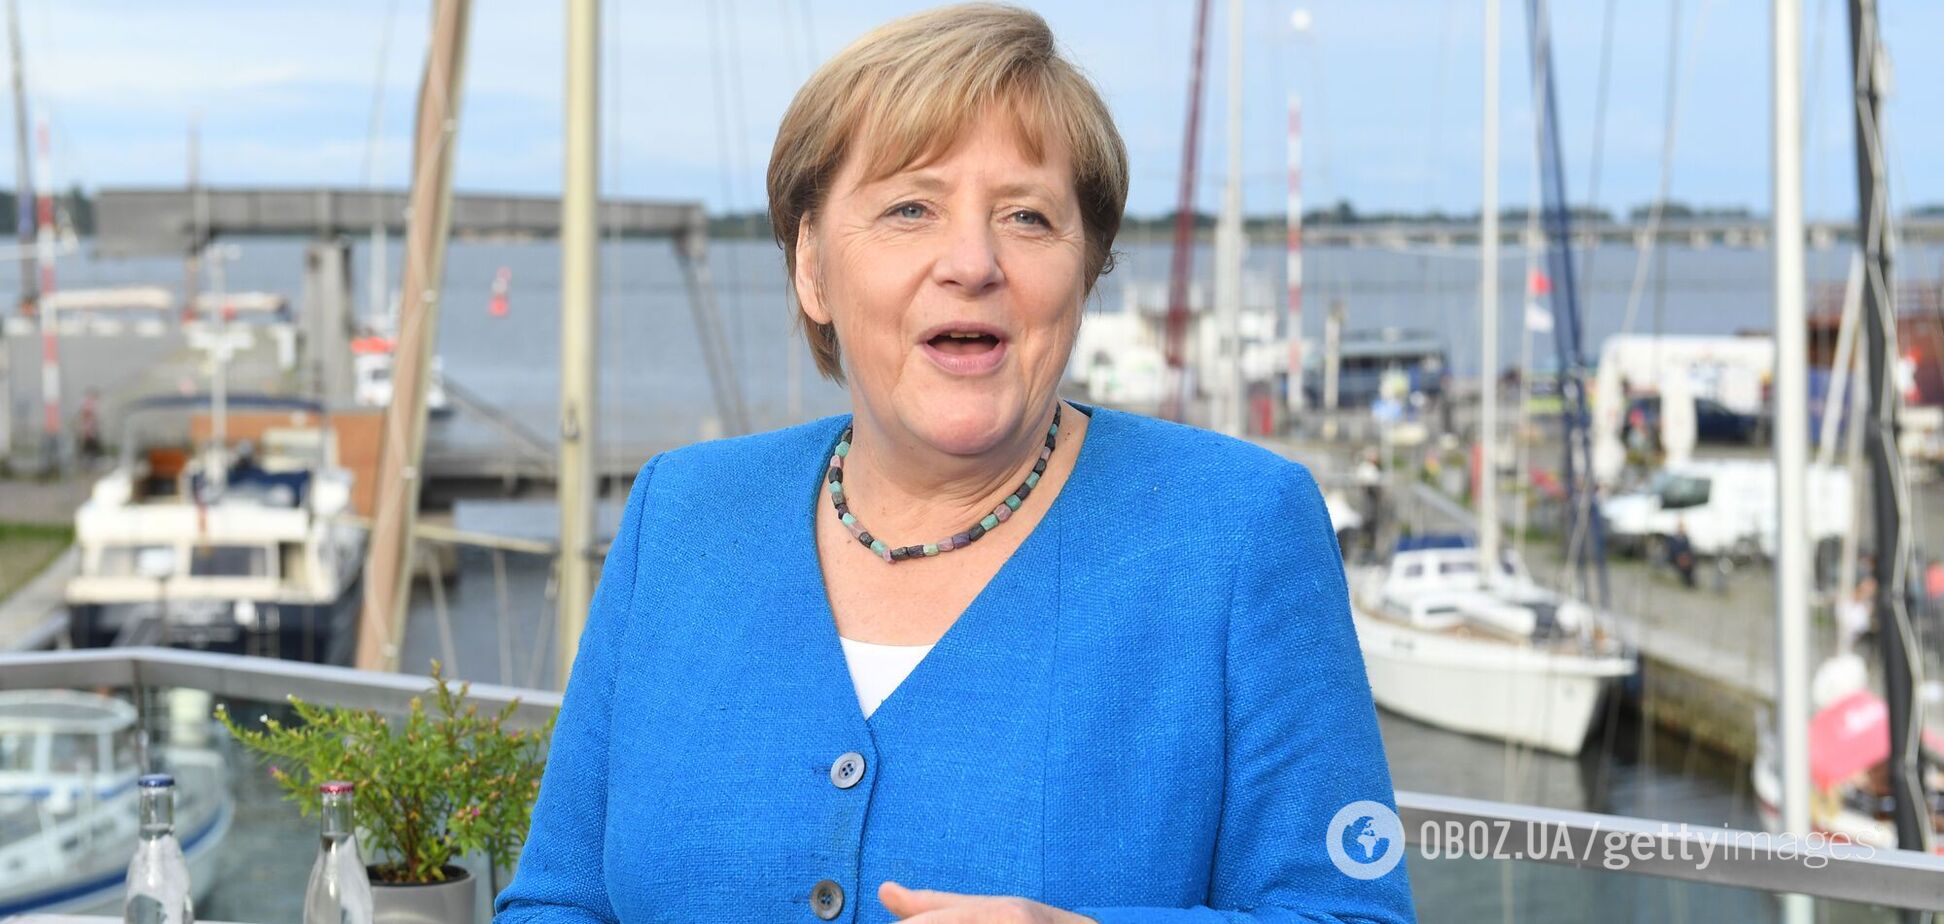 Ангела Меркель заявила, что правительство Германии поддержит завершение строительства газопровода